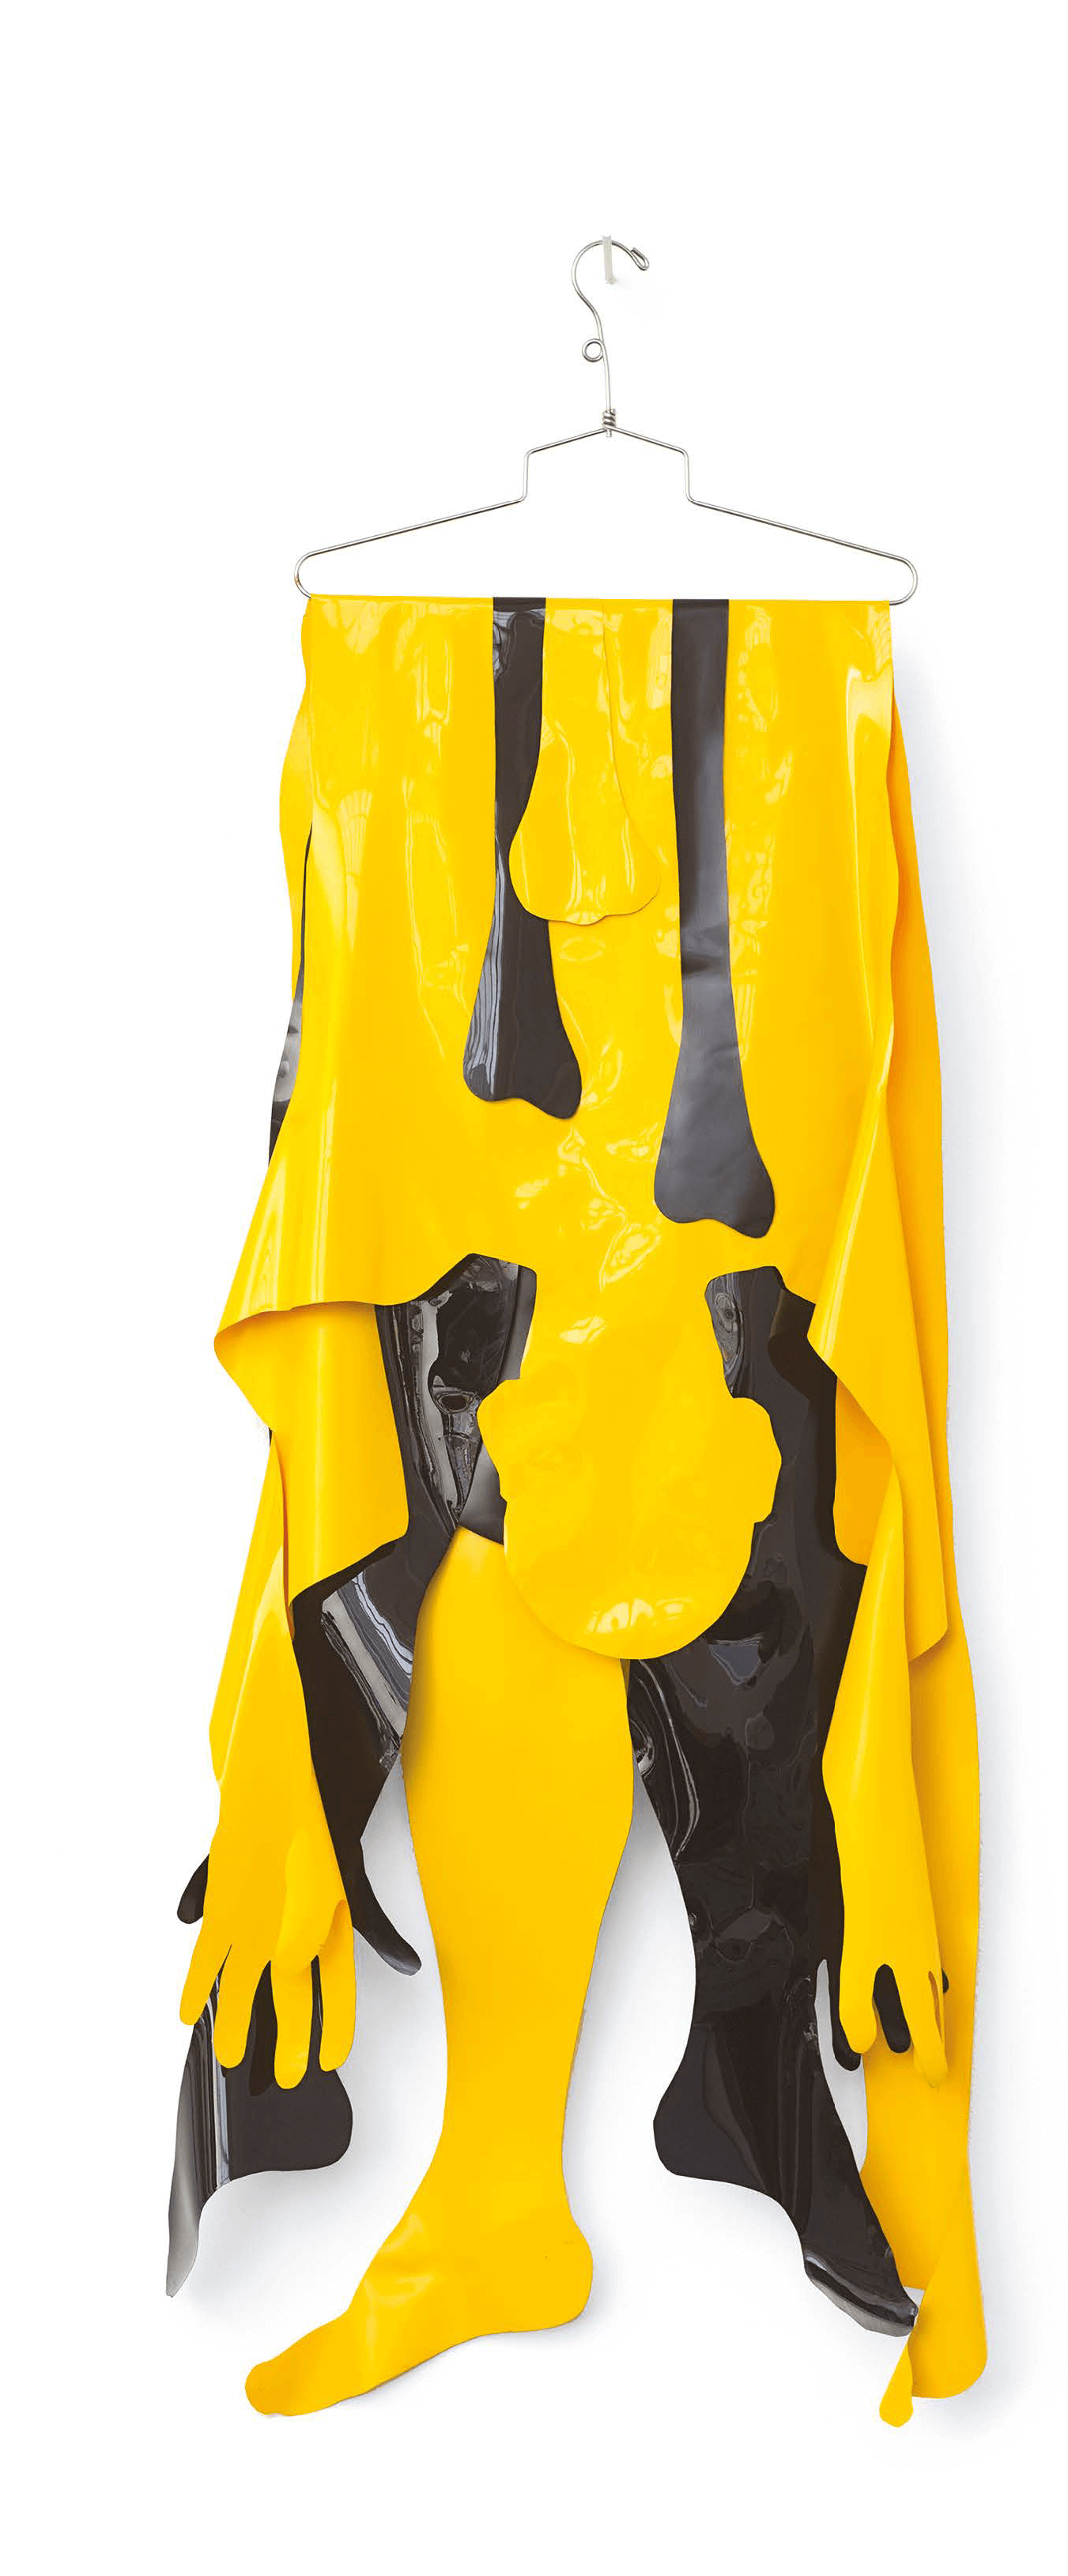 Claes, 1970, vinyle et cintre en métal chromé, 143,2 x 57,2 x 4,5 cm, Kiki Kogelnik Foundation © Kiki Kogelnik Foundation. All rights reserved